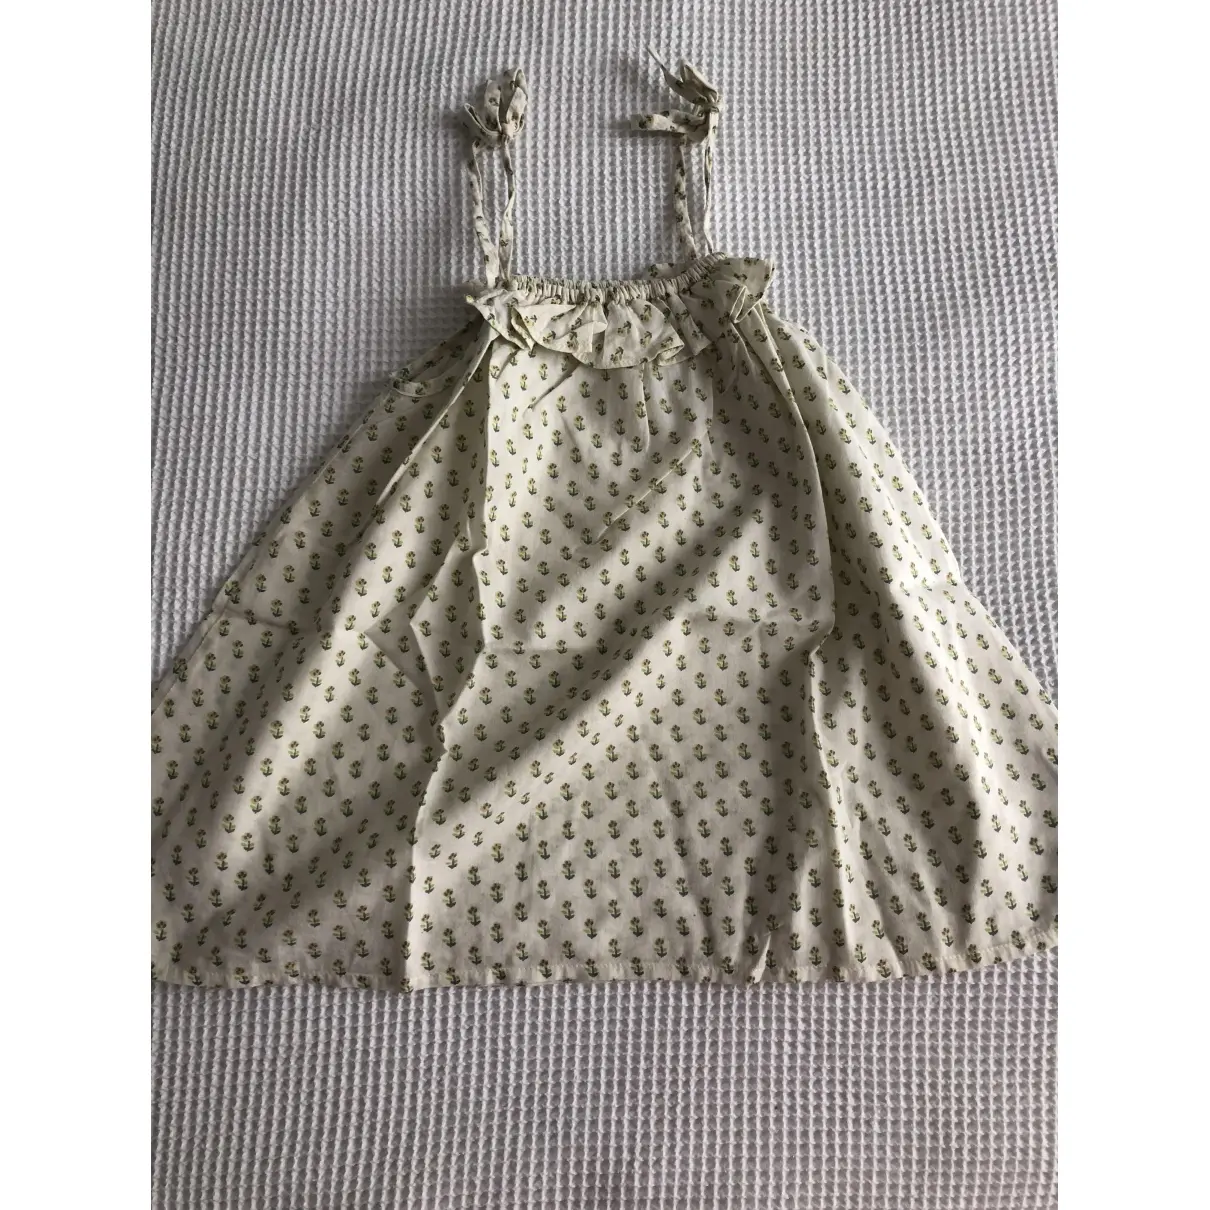 Bonton Mini dress for sale